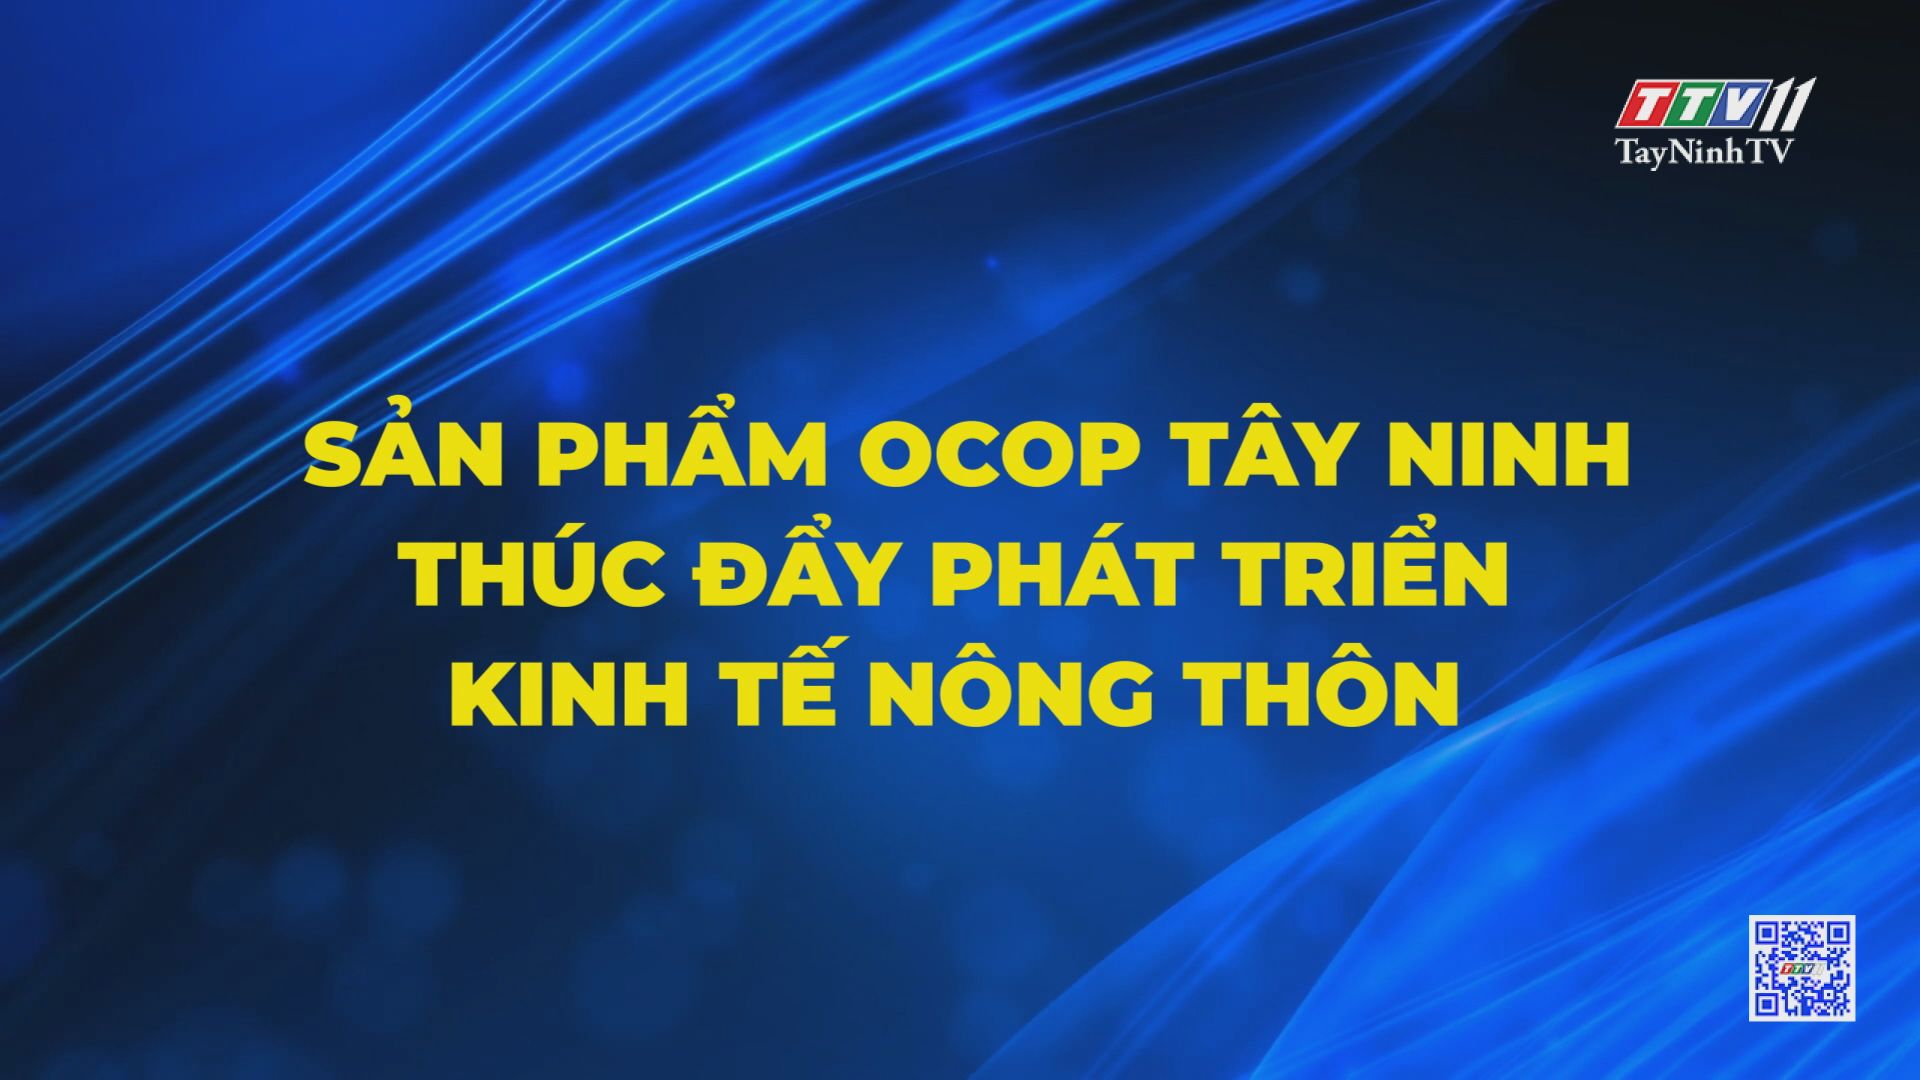 Sản phẩm OCOP Tây Ninh thúc đẩy phát triển kinh tế nông thôn | NHỮNG VẤN ĐỀ HÔM NAY | TayNinhTV